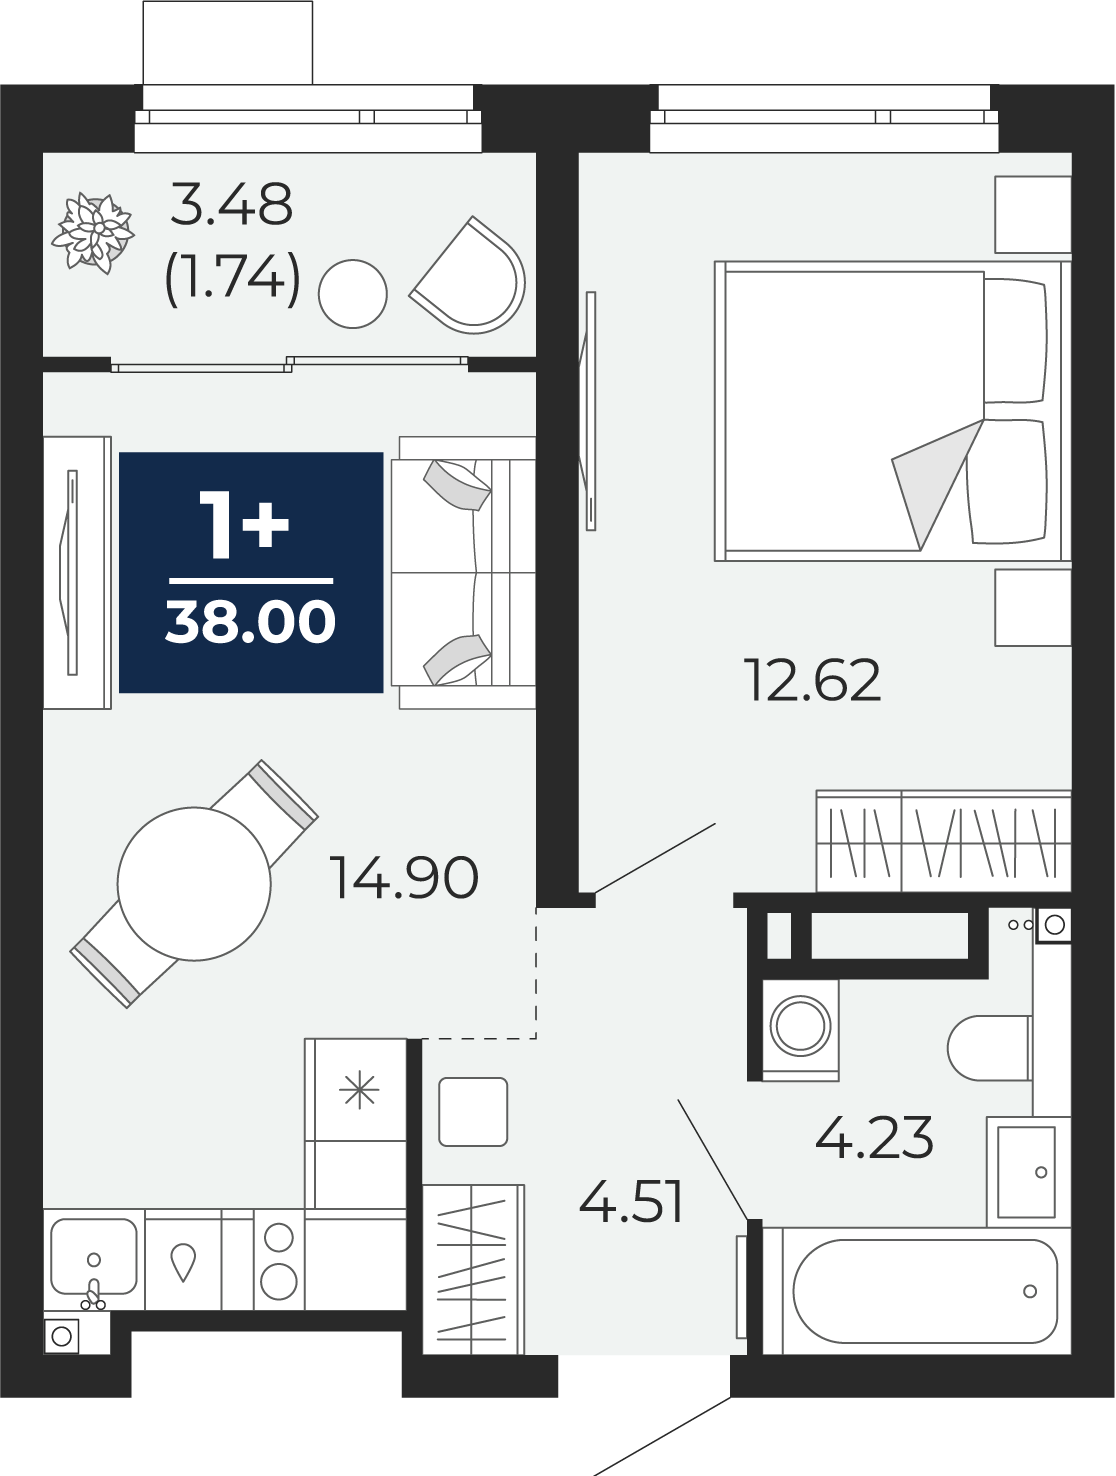 Квартира № 261, 1-комнатная, 38 кв. м, 16 этаж